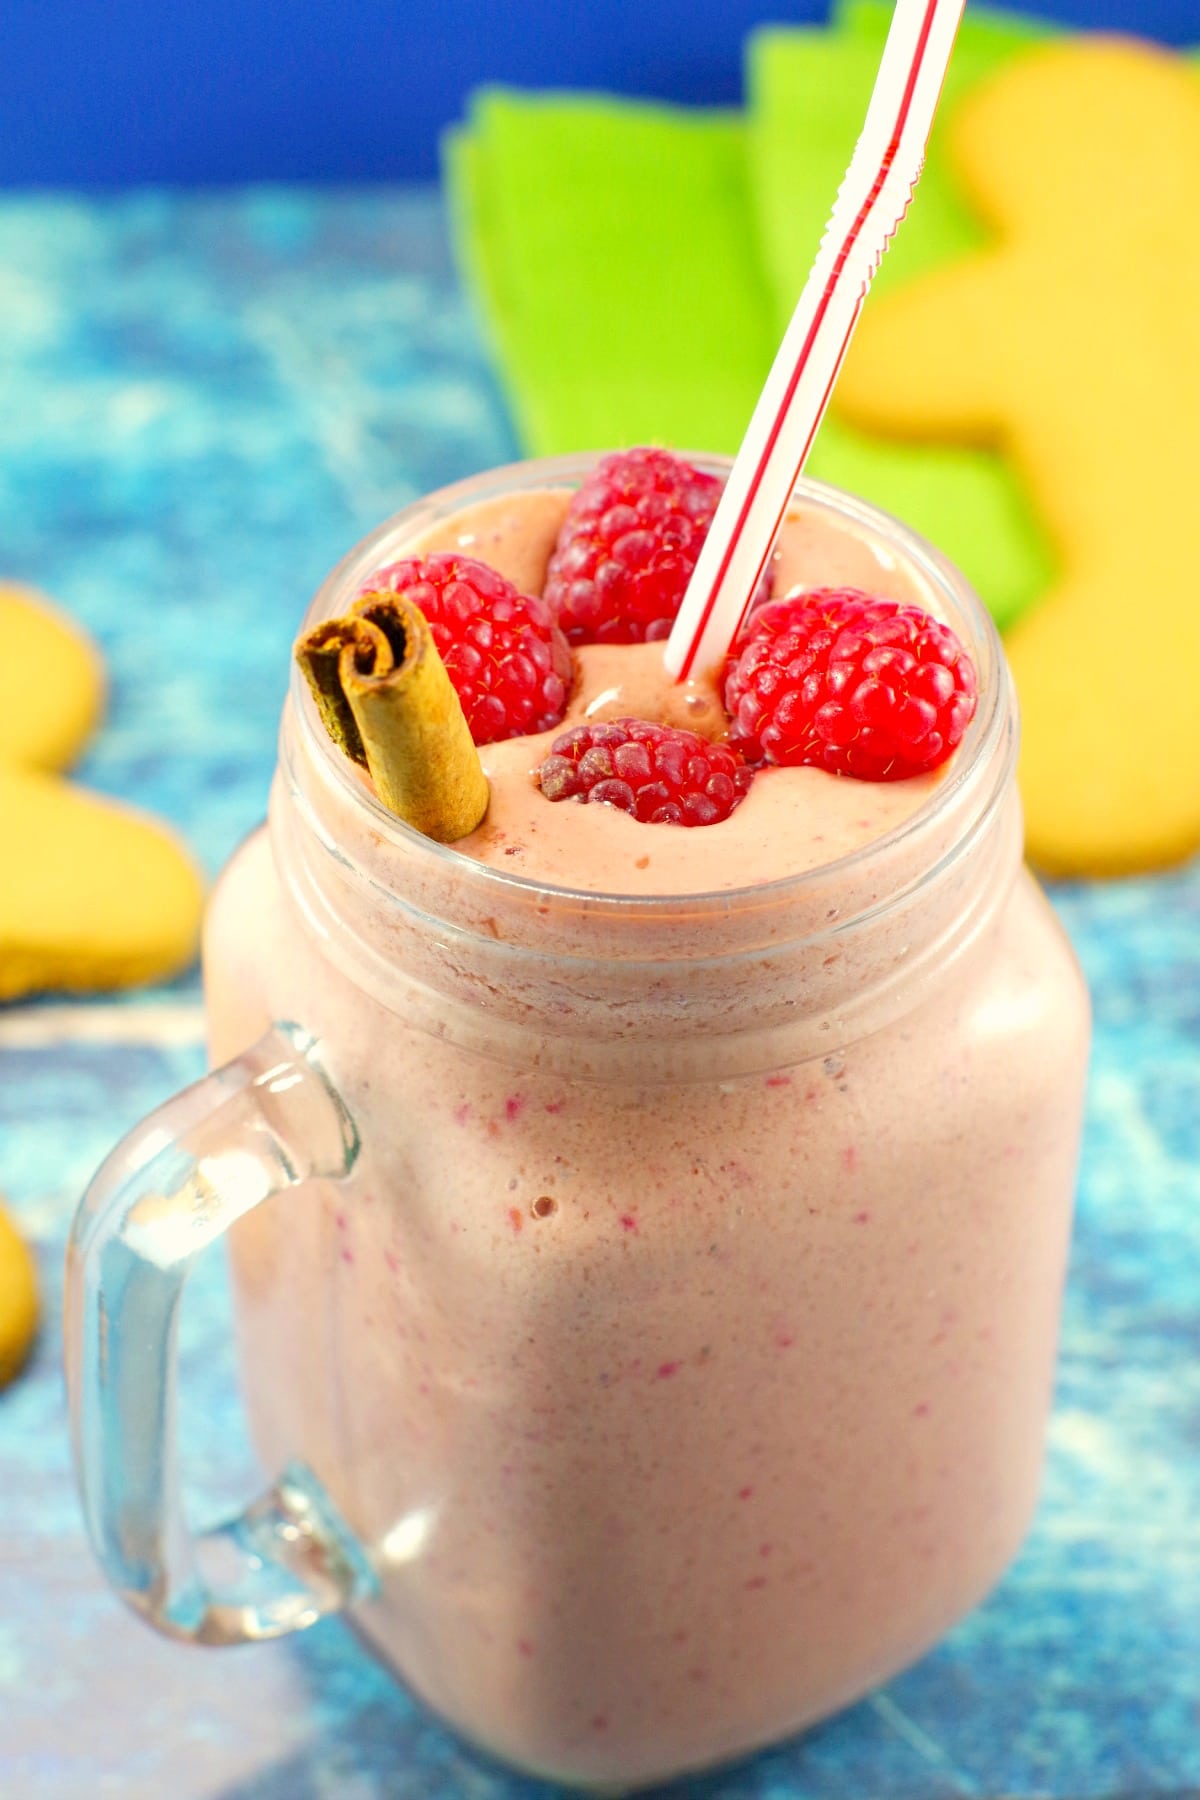 Gingerbread Raspberry Smoothie recipe | yogurt smoothie- Foodmeanderings.com